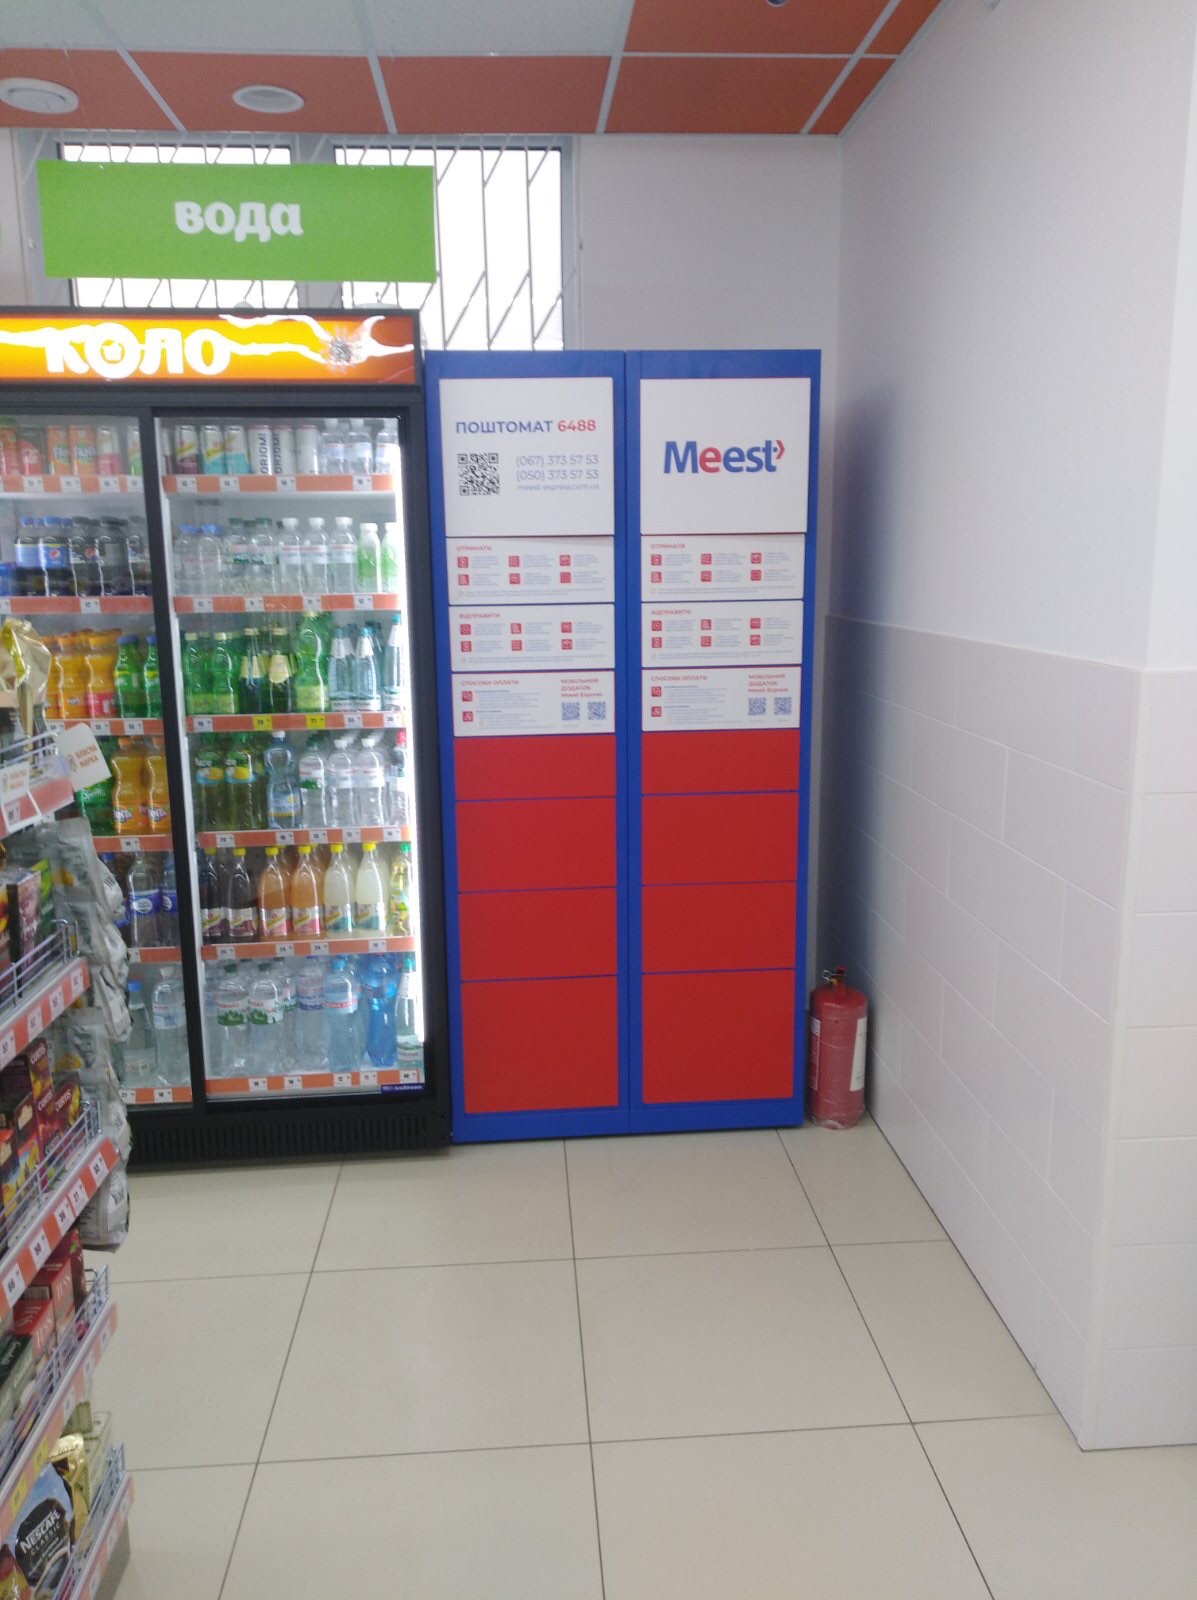 мережа магазинів КОЛО встановила автоматизовані поштомати Meest